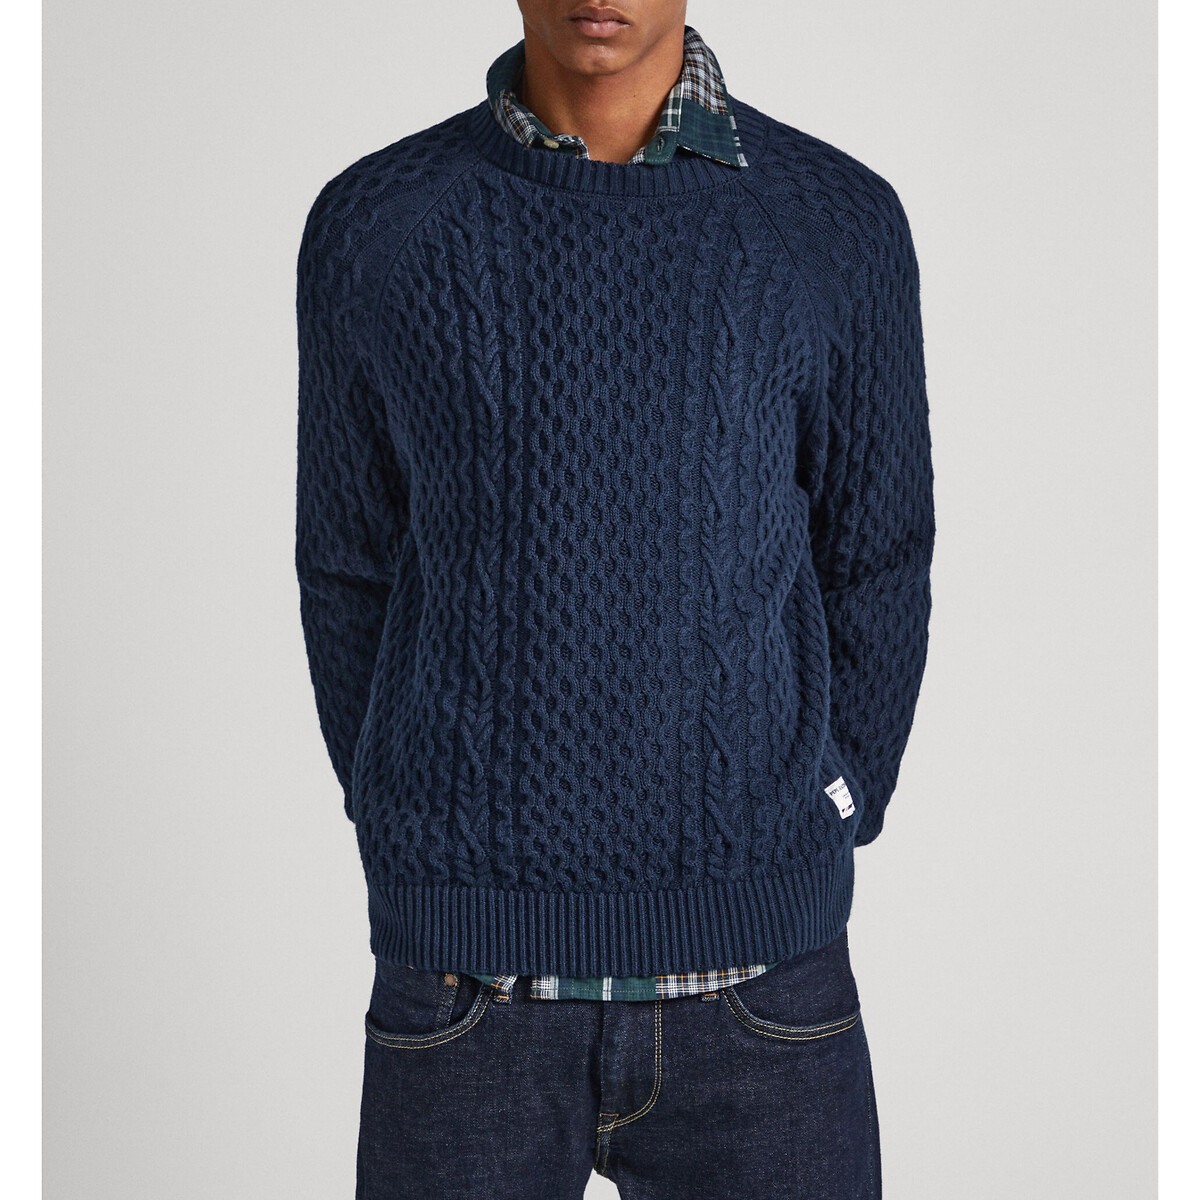 Пуловер с круглым вырезом из текстурированного трикотажа M синий пуловер с круглым вырезом из структурного трикотажа panter life l синий